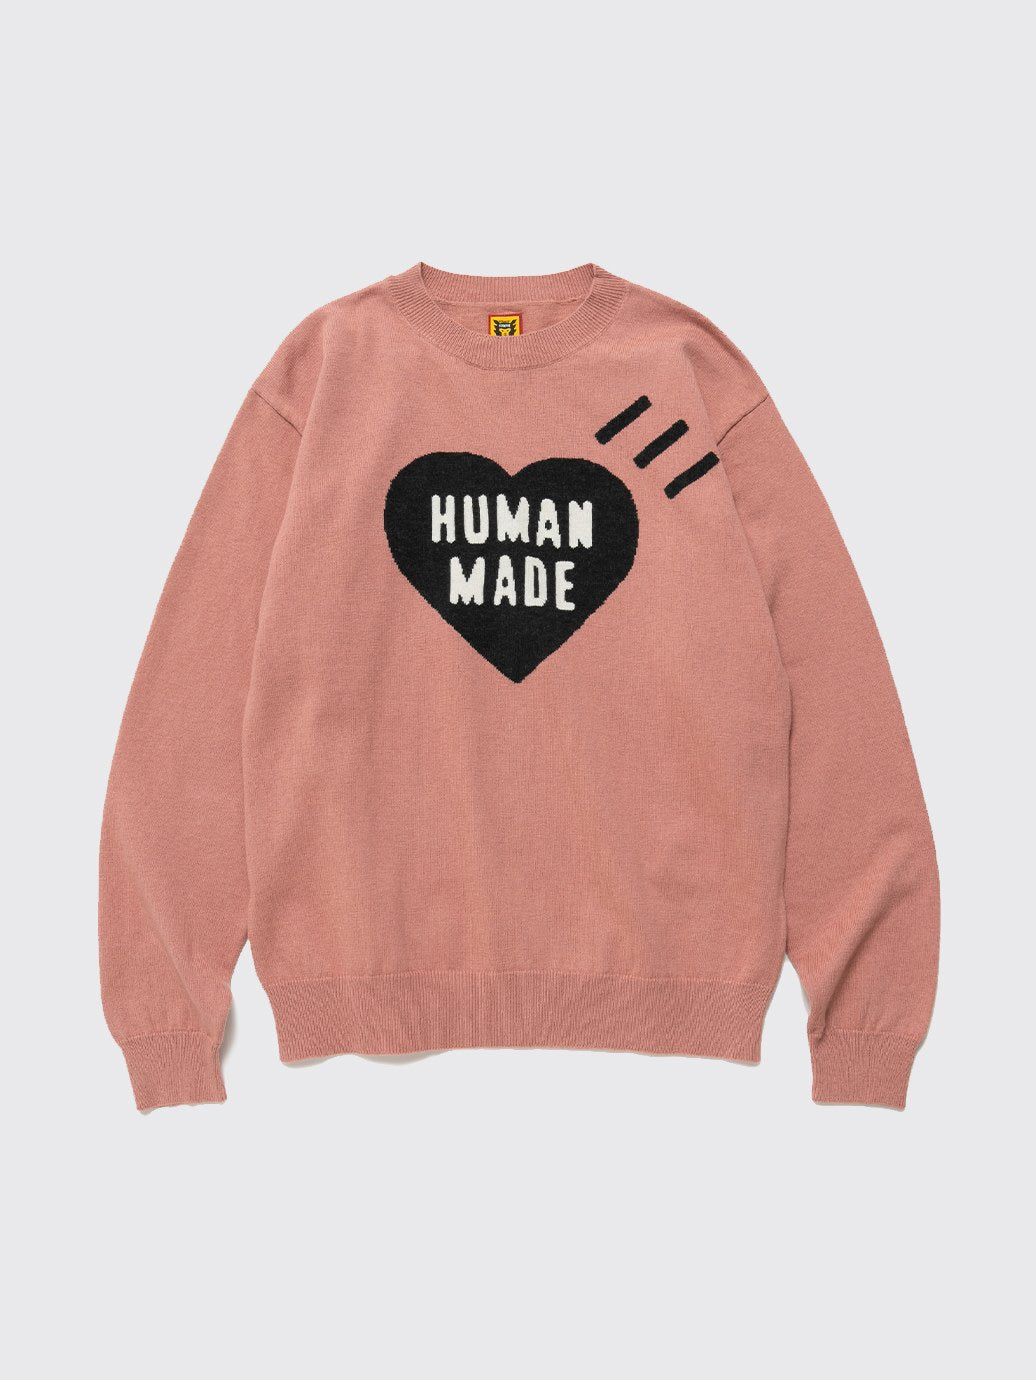 お得NEW【お値引きOKです様専用】human made heart sweater トップス